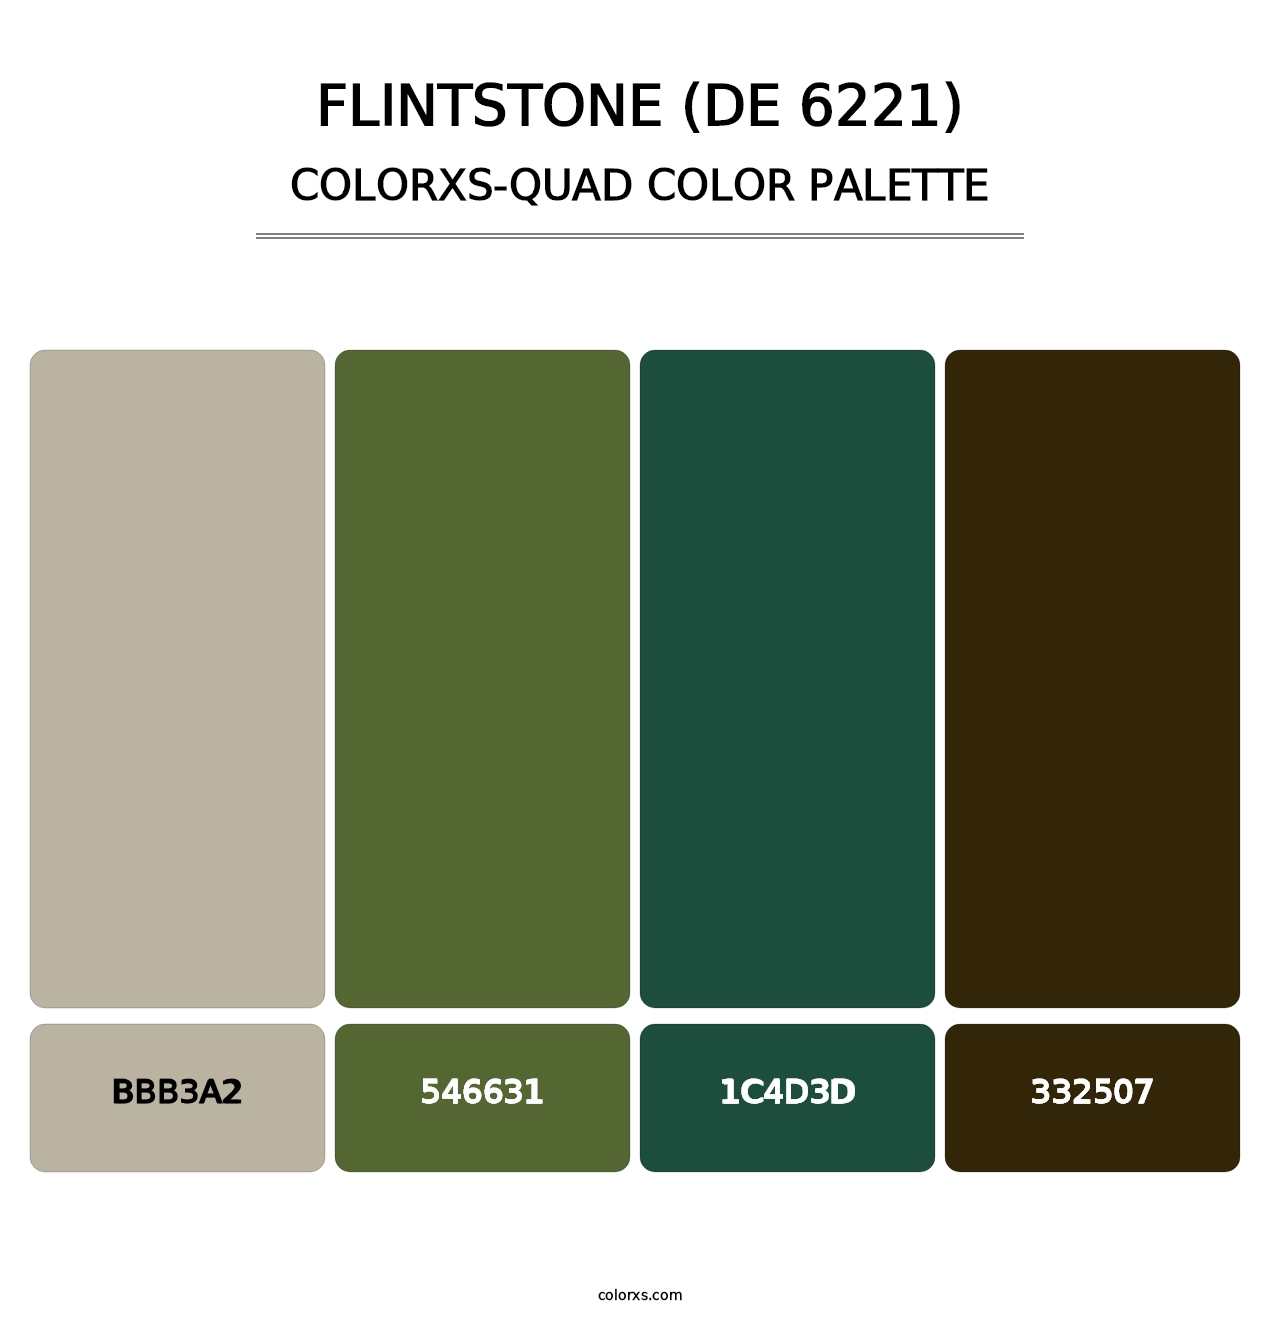 Flintstone (DE 6221) - Colorxs Quad Palette